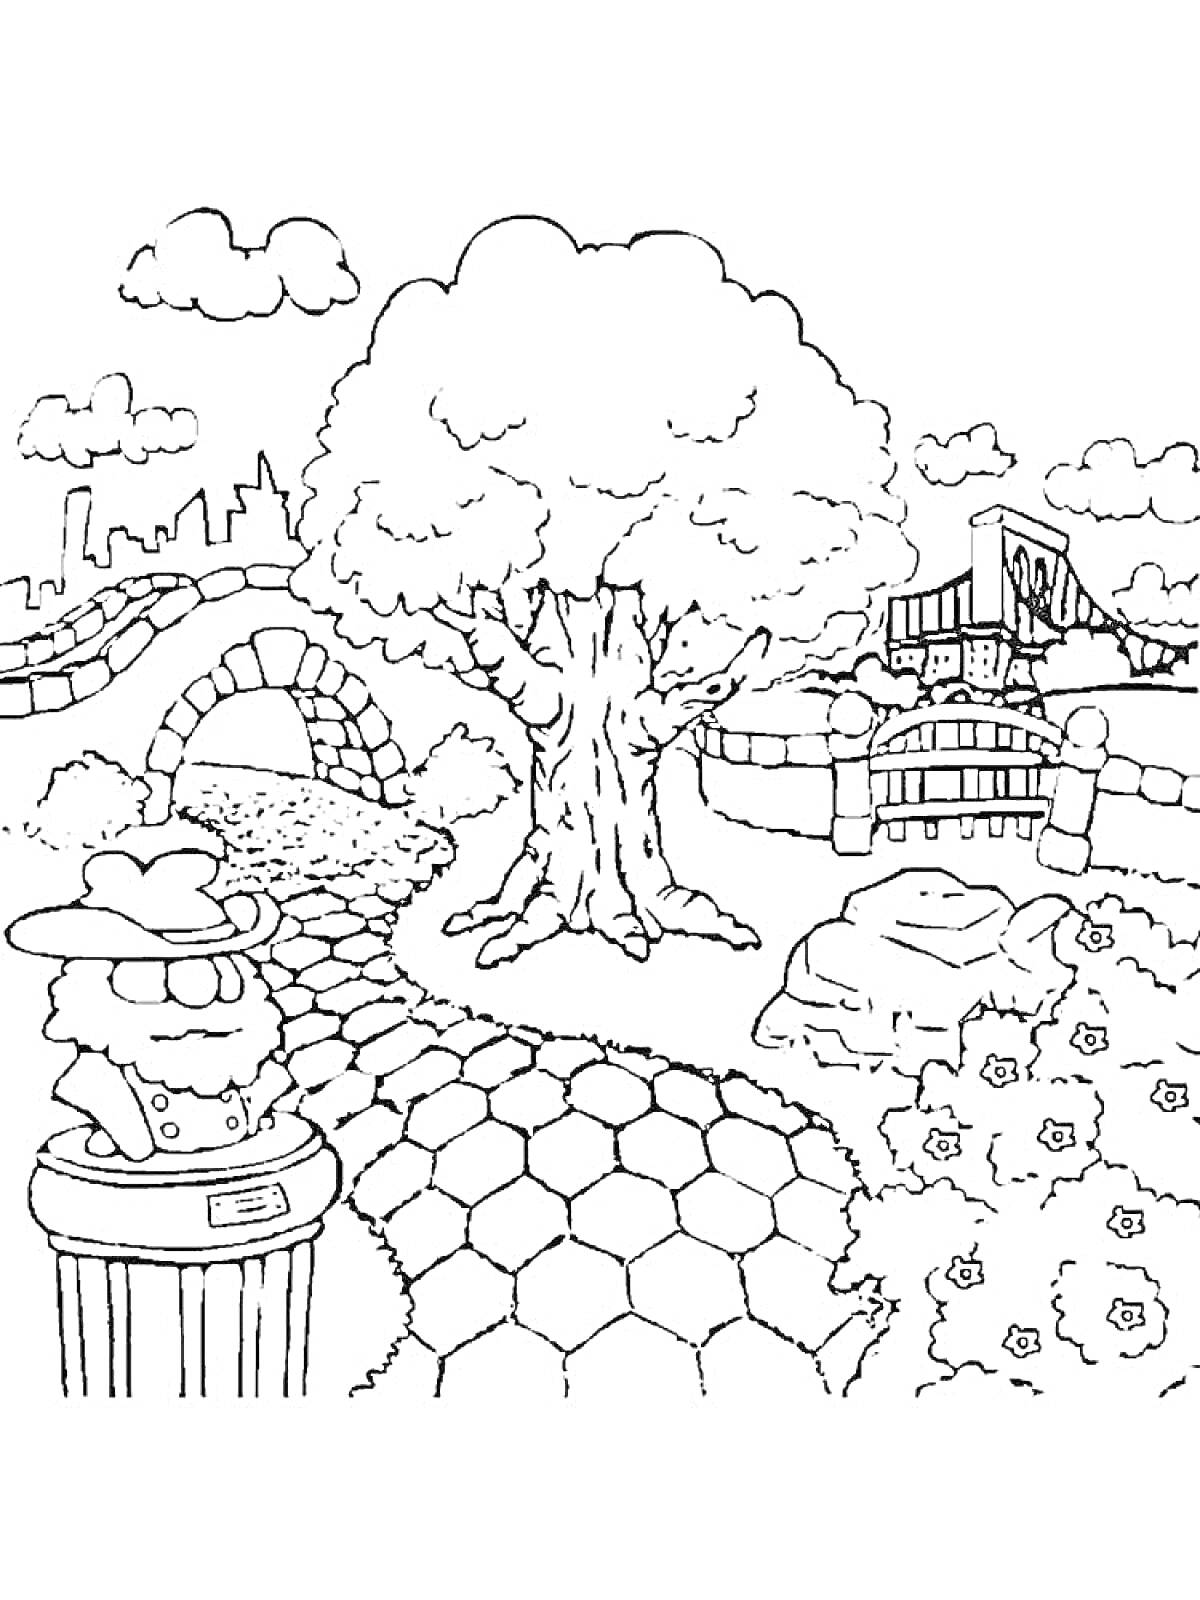 Раскраска Сад с большими деревьями, мостом, каменной дорожкой и статуей с кисточкой шляпы